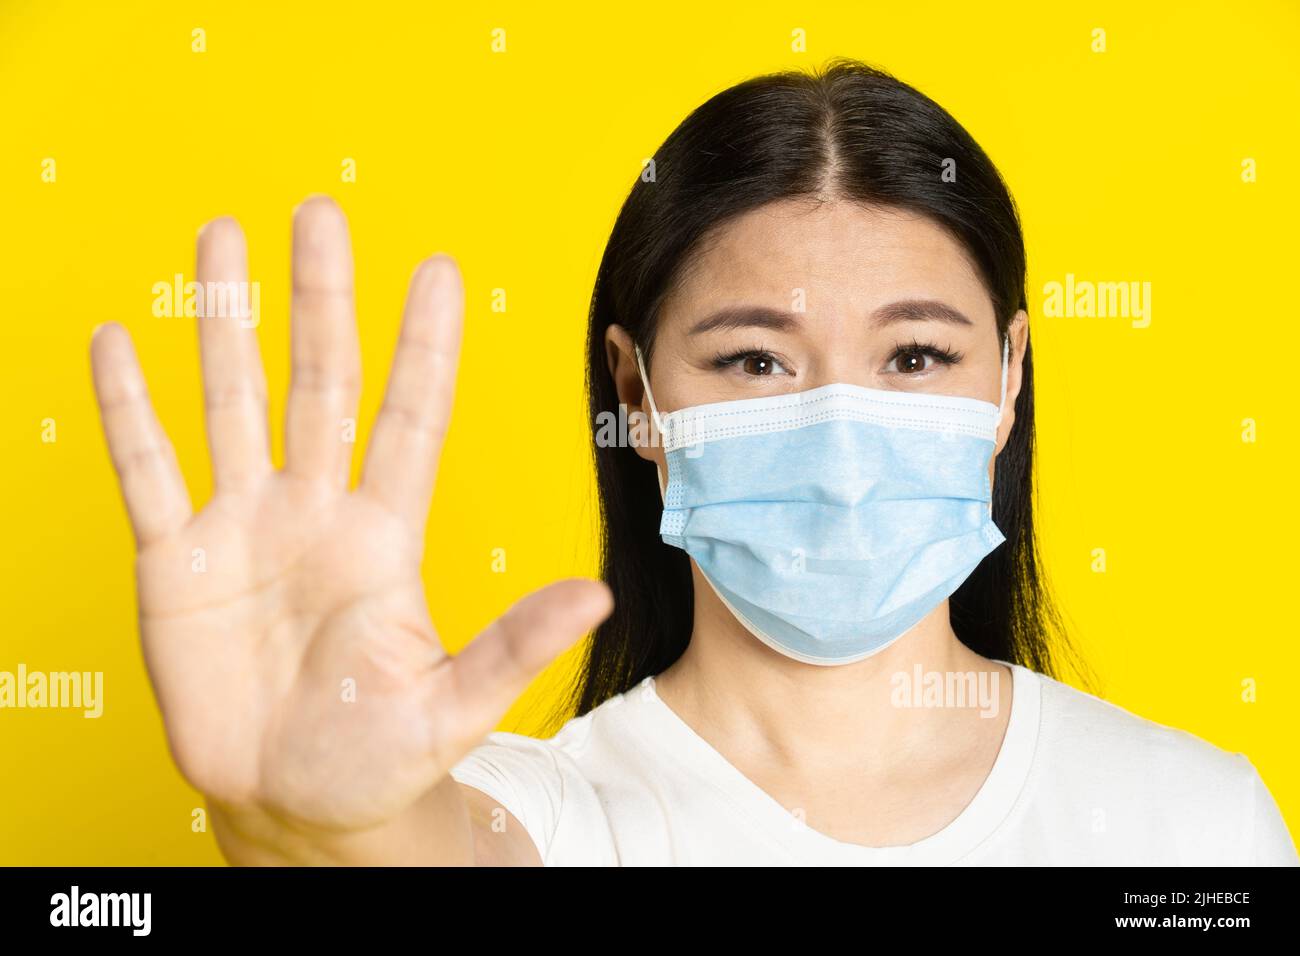 Bitten, mittleren Alters asiatische Frau tragen medizinische Maske Gestik zu stoppen, um mit positiven Augen auf Kamera isoliert auf gelbem Hintergrund zu halten. Pandemiekonzept, Affenpocken- oder Coronavirus. Stockfoto